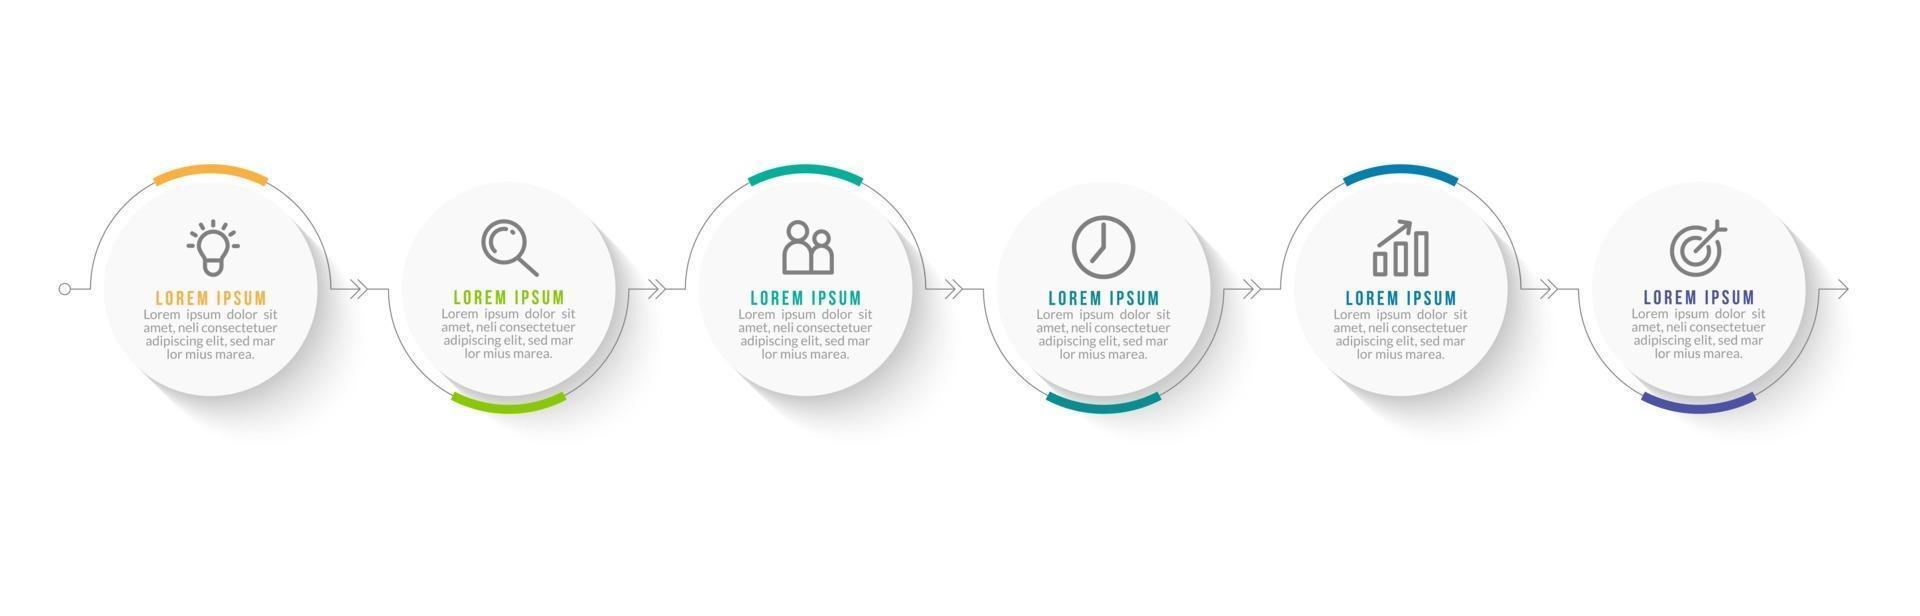 processo de infográfico de negócios com 6 etapas vetor